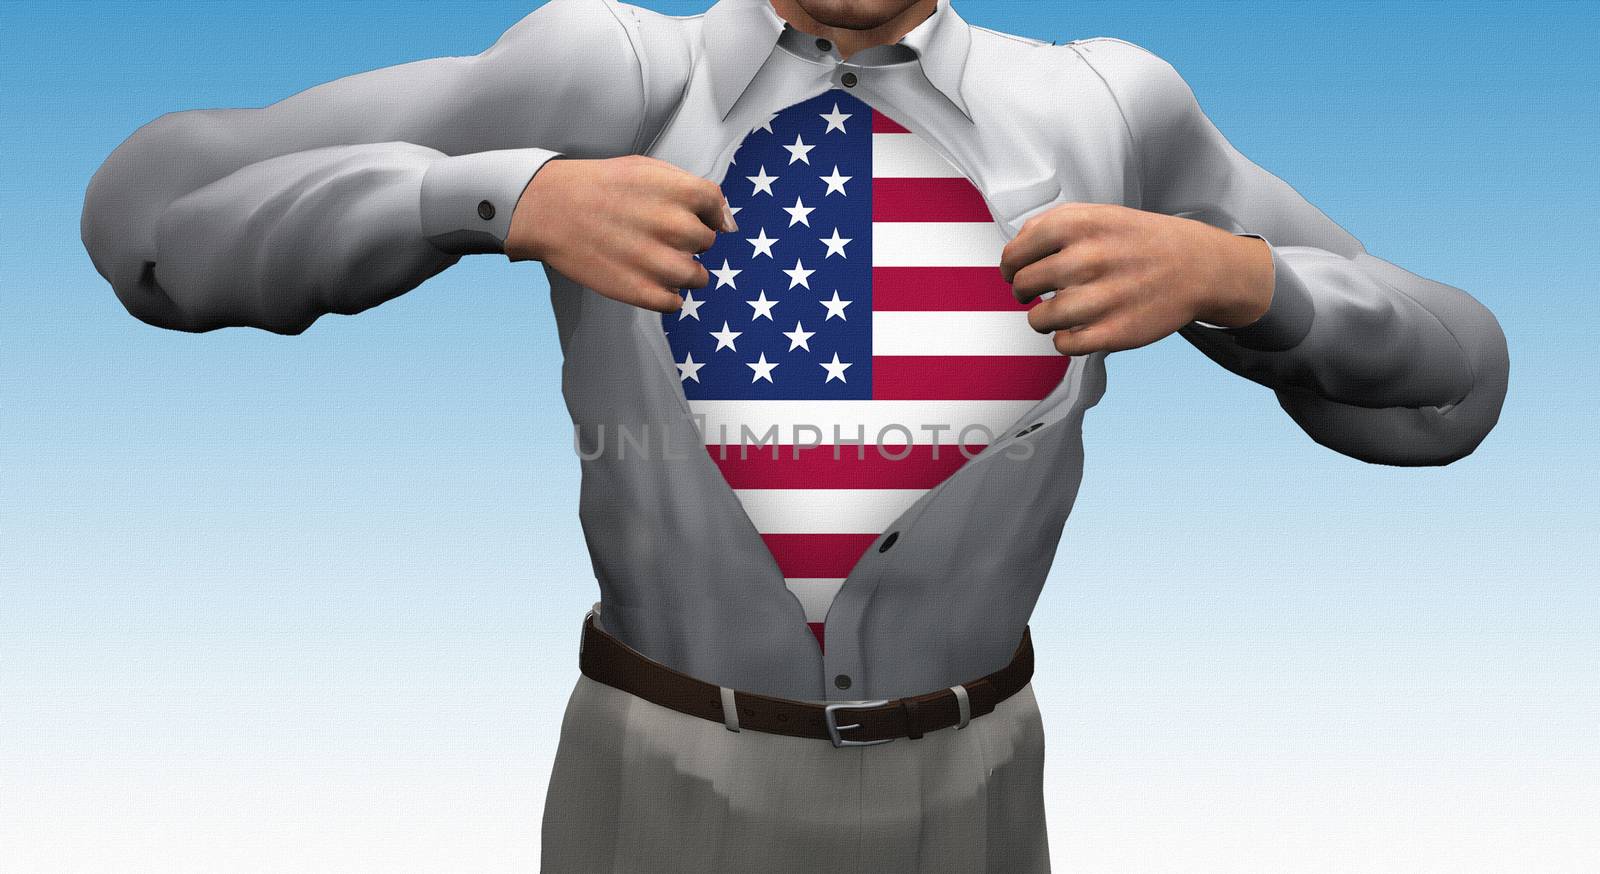 Opened shirt reveals USA Flag